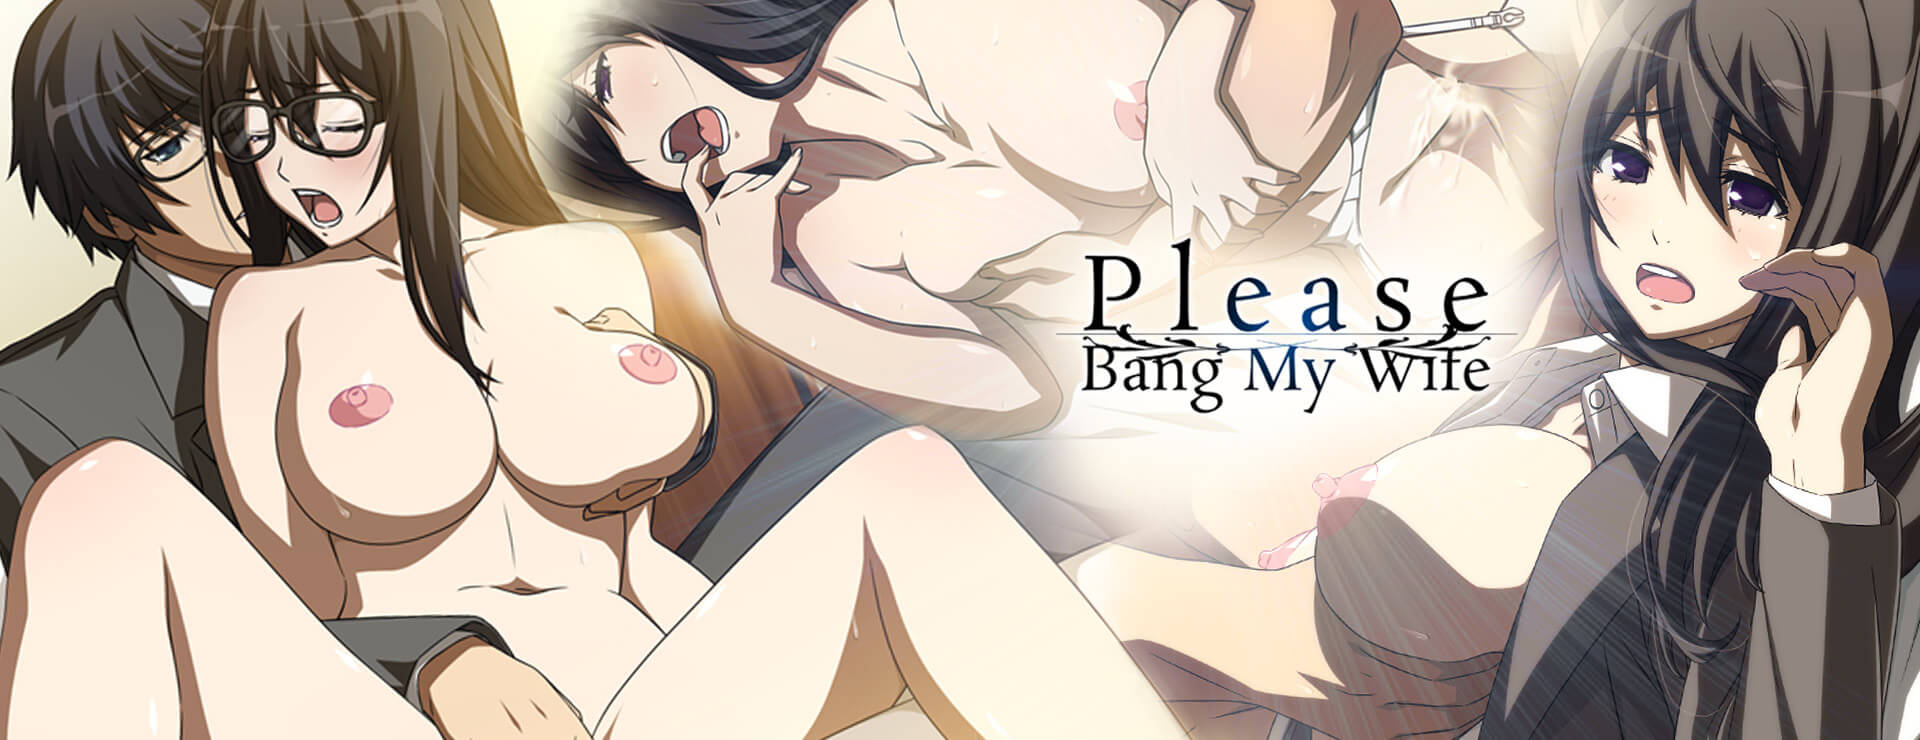 Please Bang My Wife - Visual Novel Game